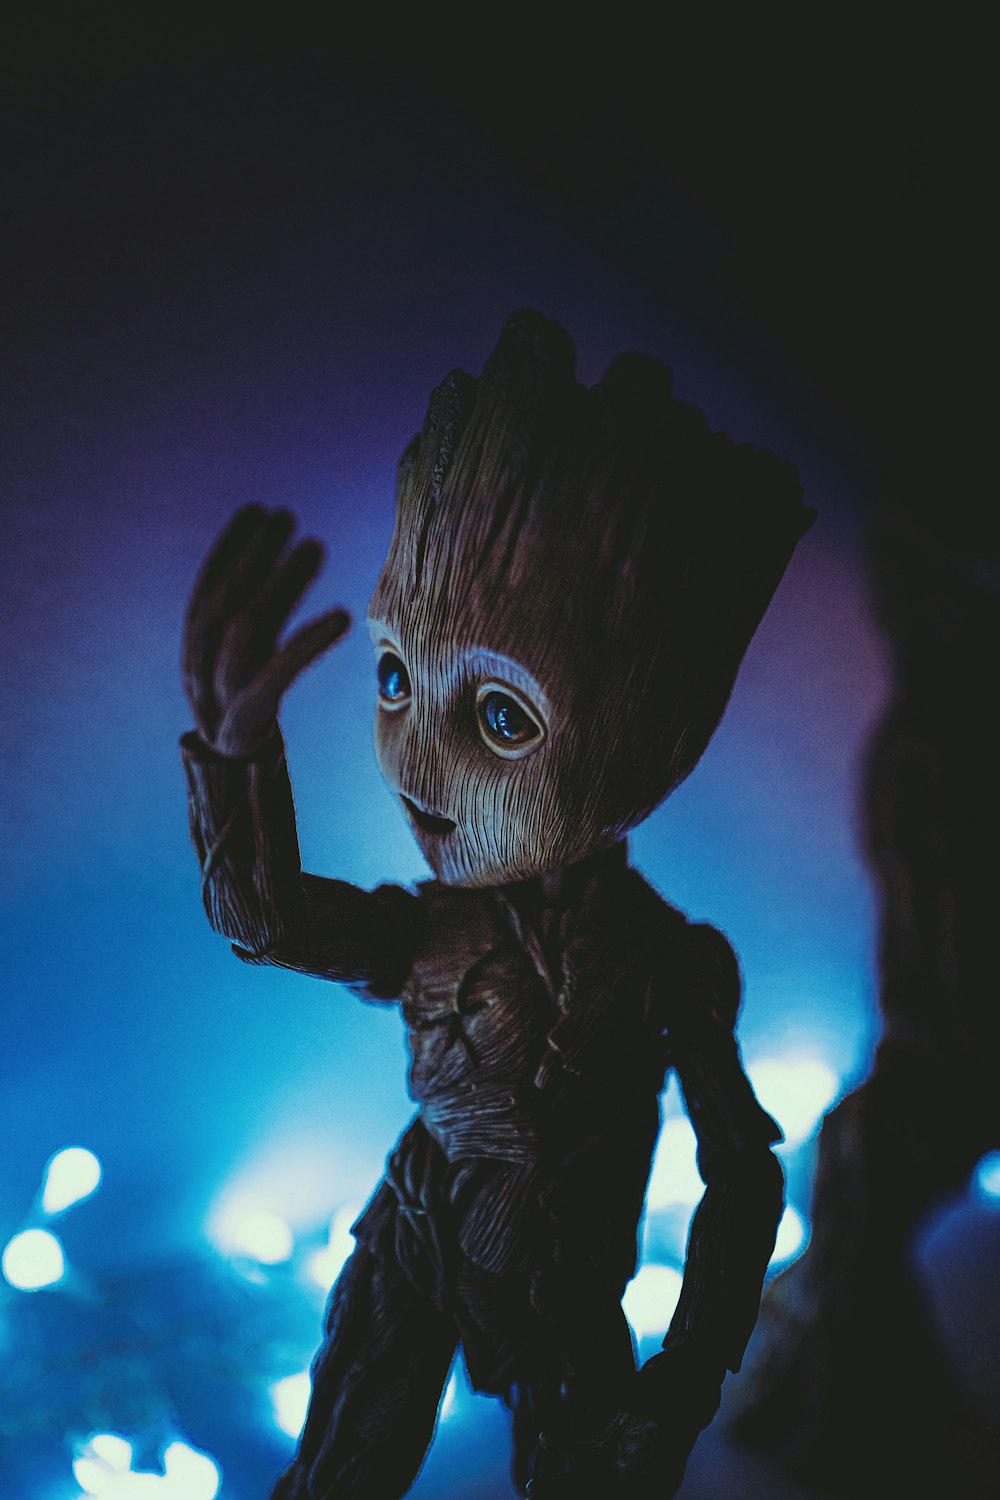 Imágenes de Groot | Descargar imágenes gratis en Unsplash